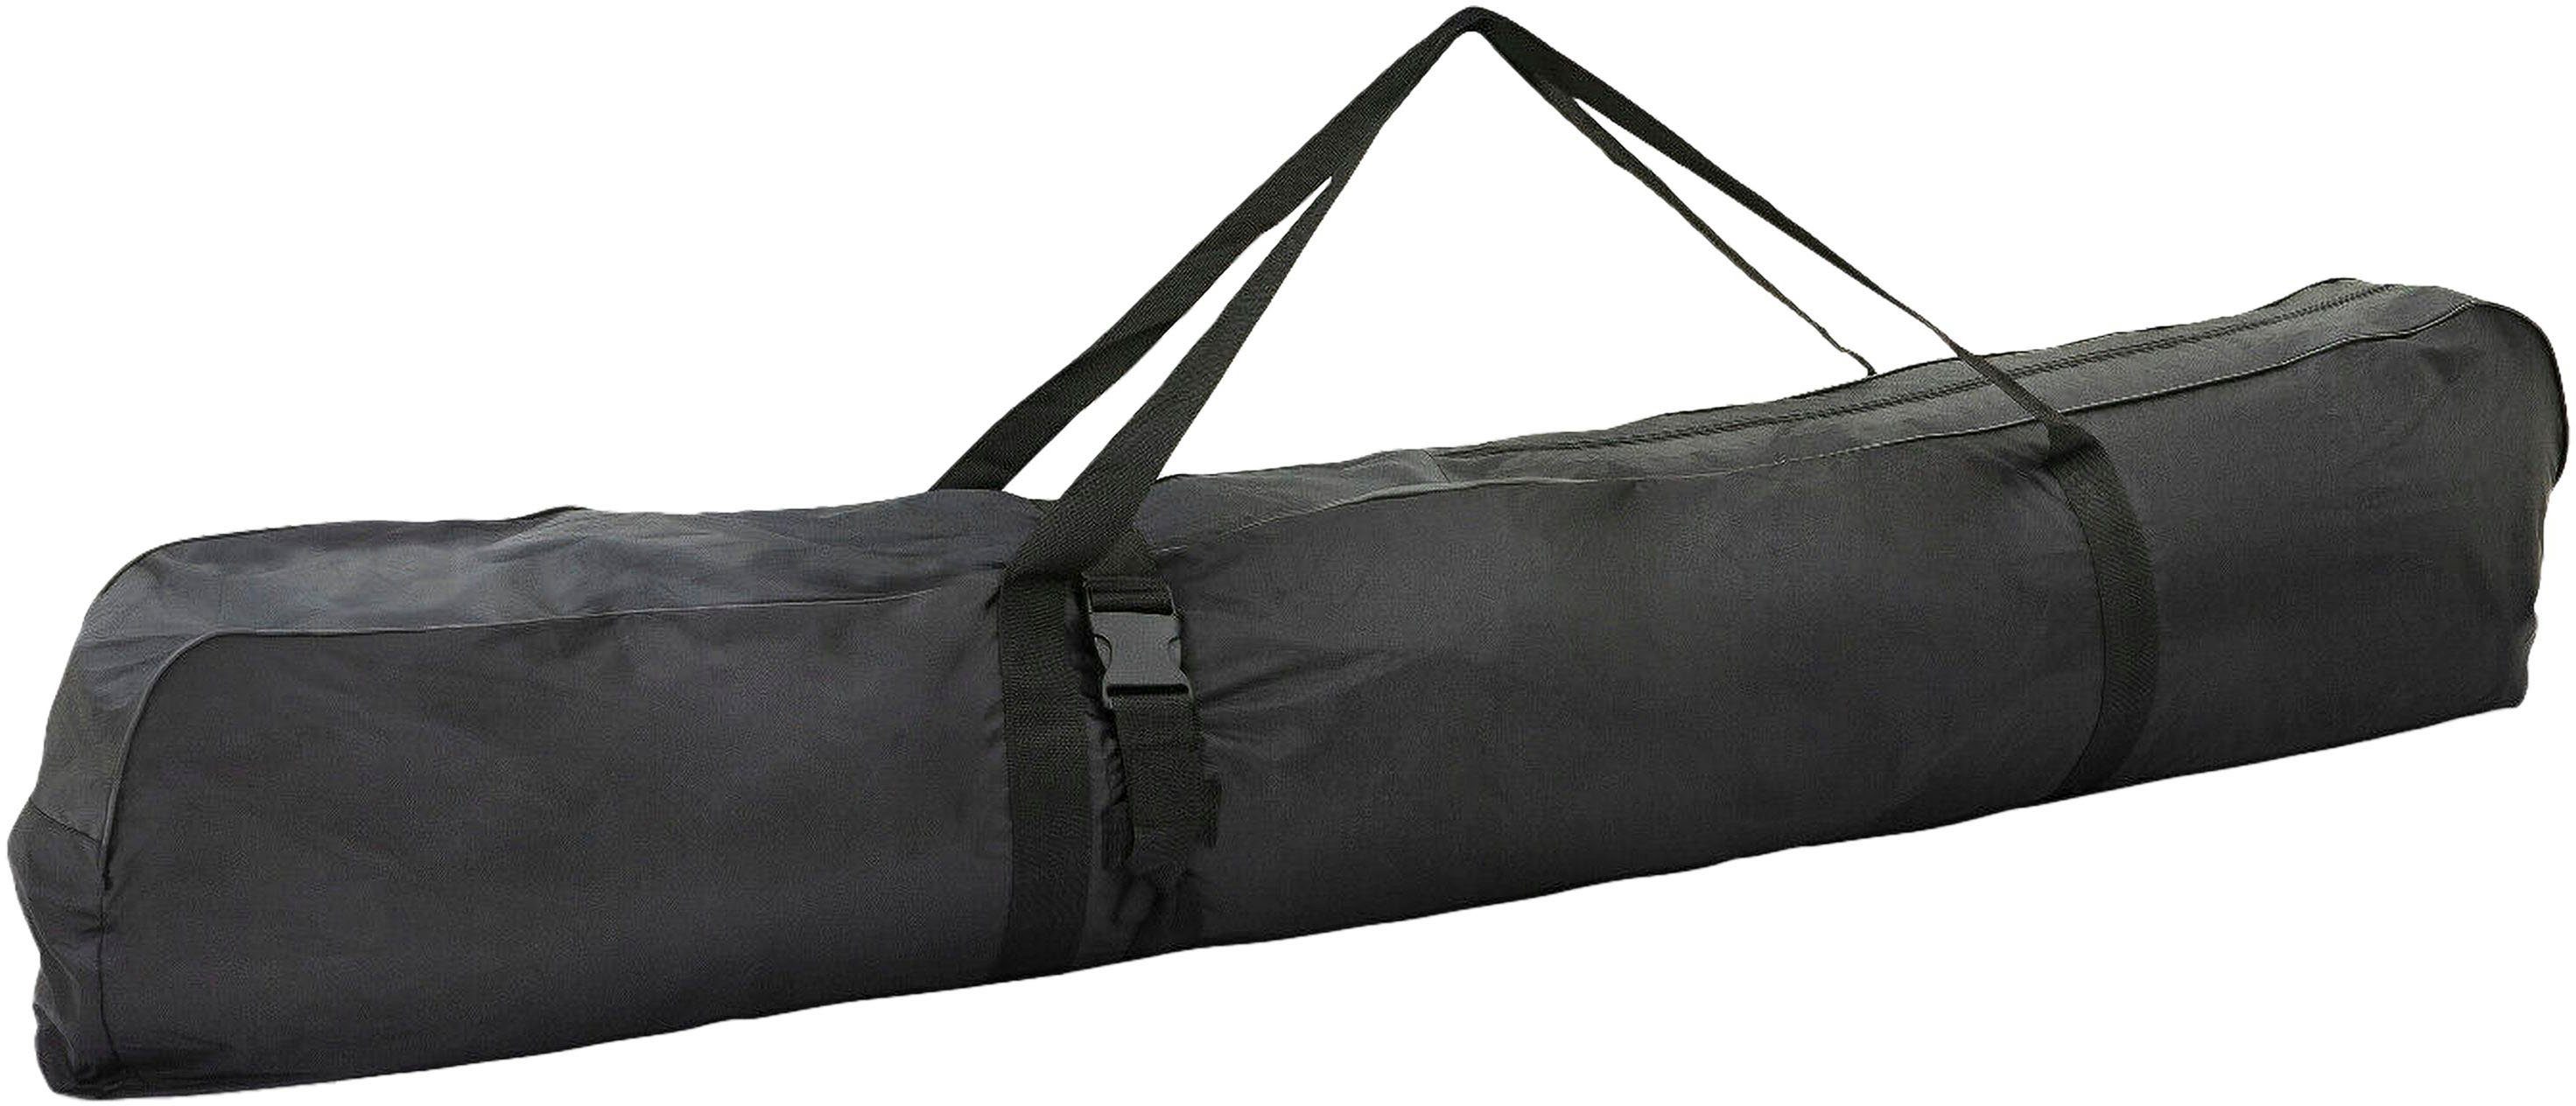 Petex Skitasche Skisack, Aufbewahrungsstasche, ca. 200x20x40 cm, 160L Volumen, passend bis zu 4 Paar Ski, schwarz | Sporttaschen